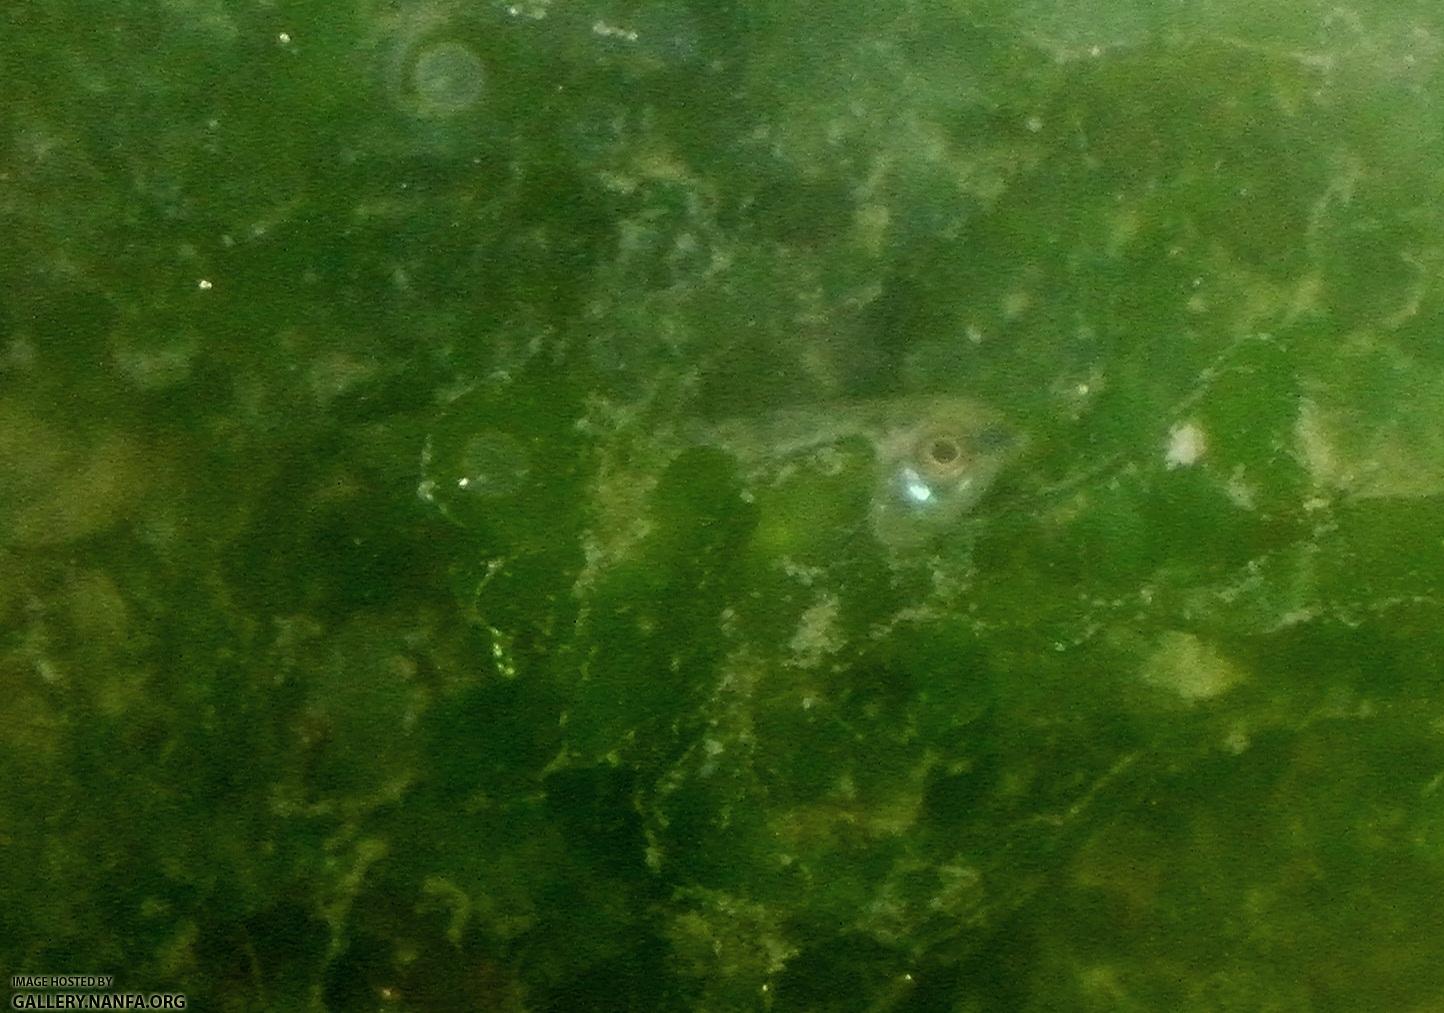 Elassoma gilberti hides in pellia zoomin